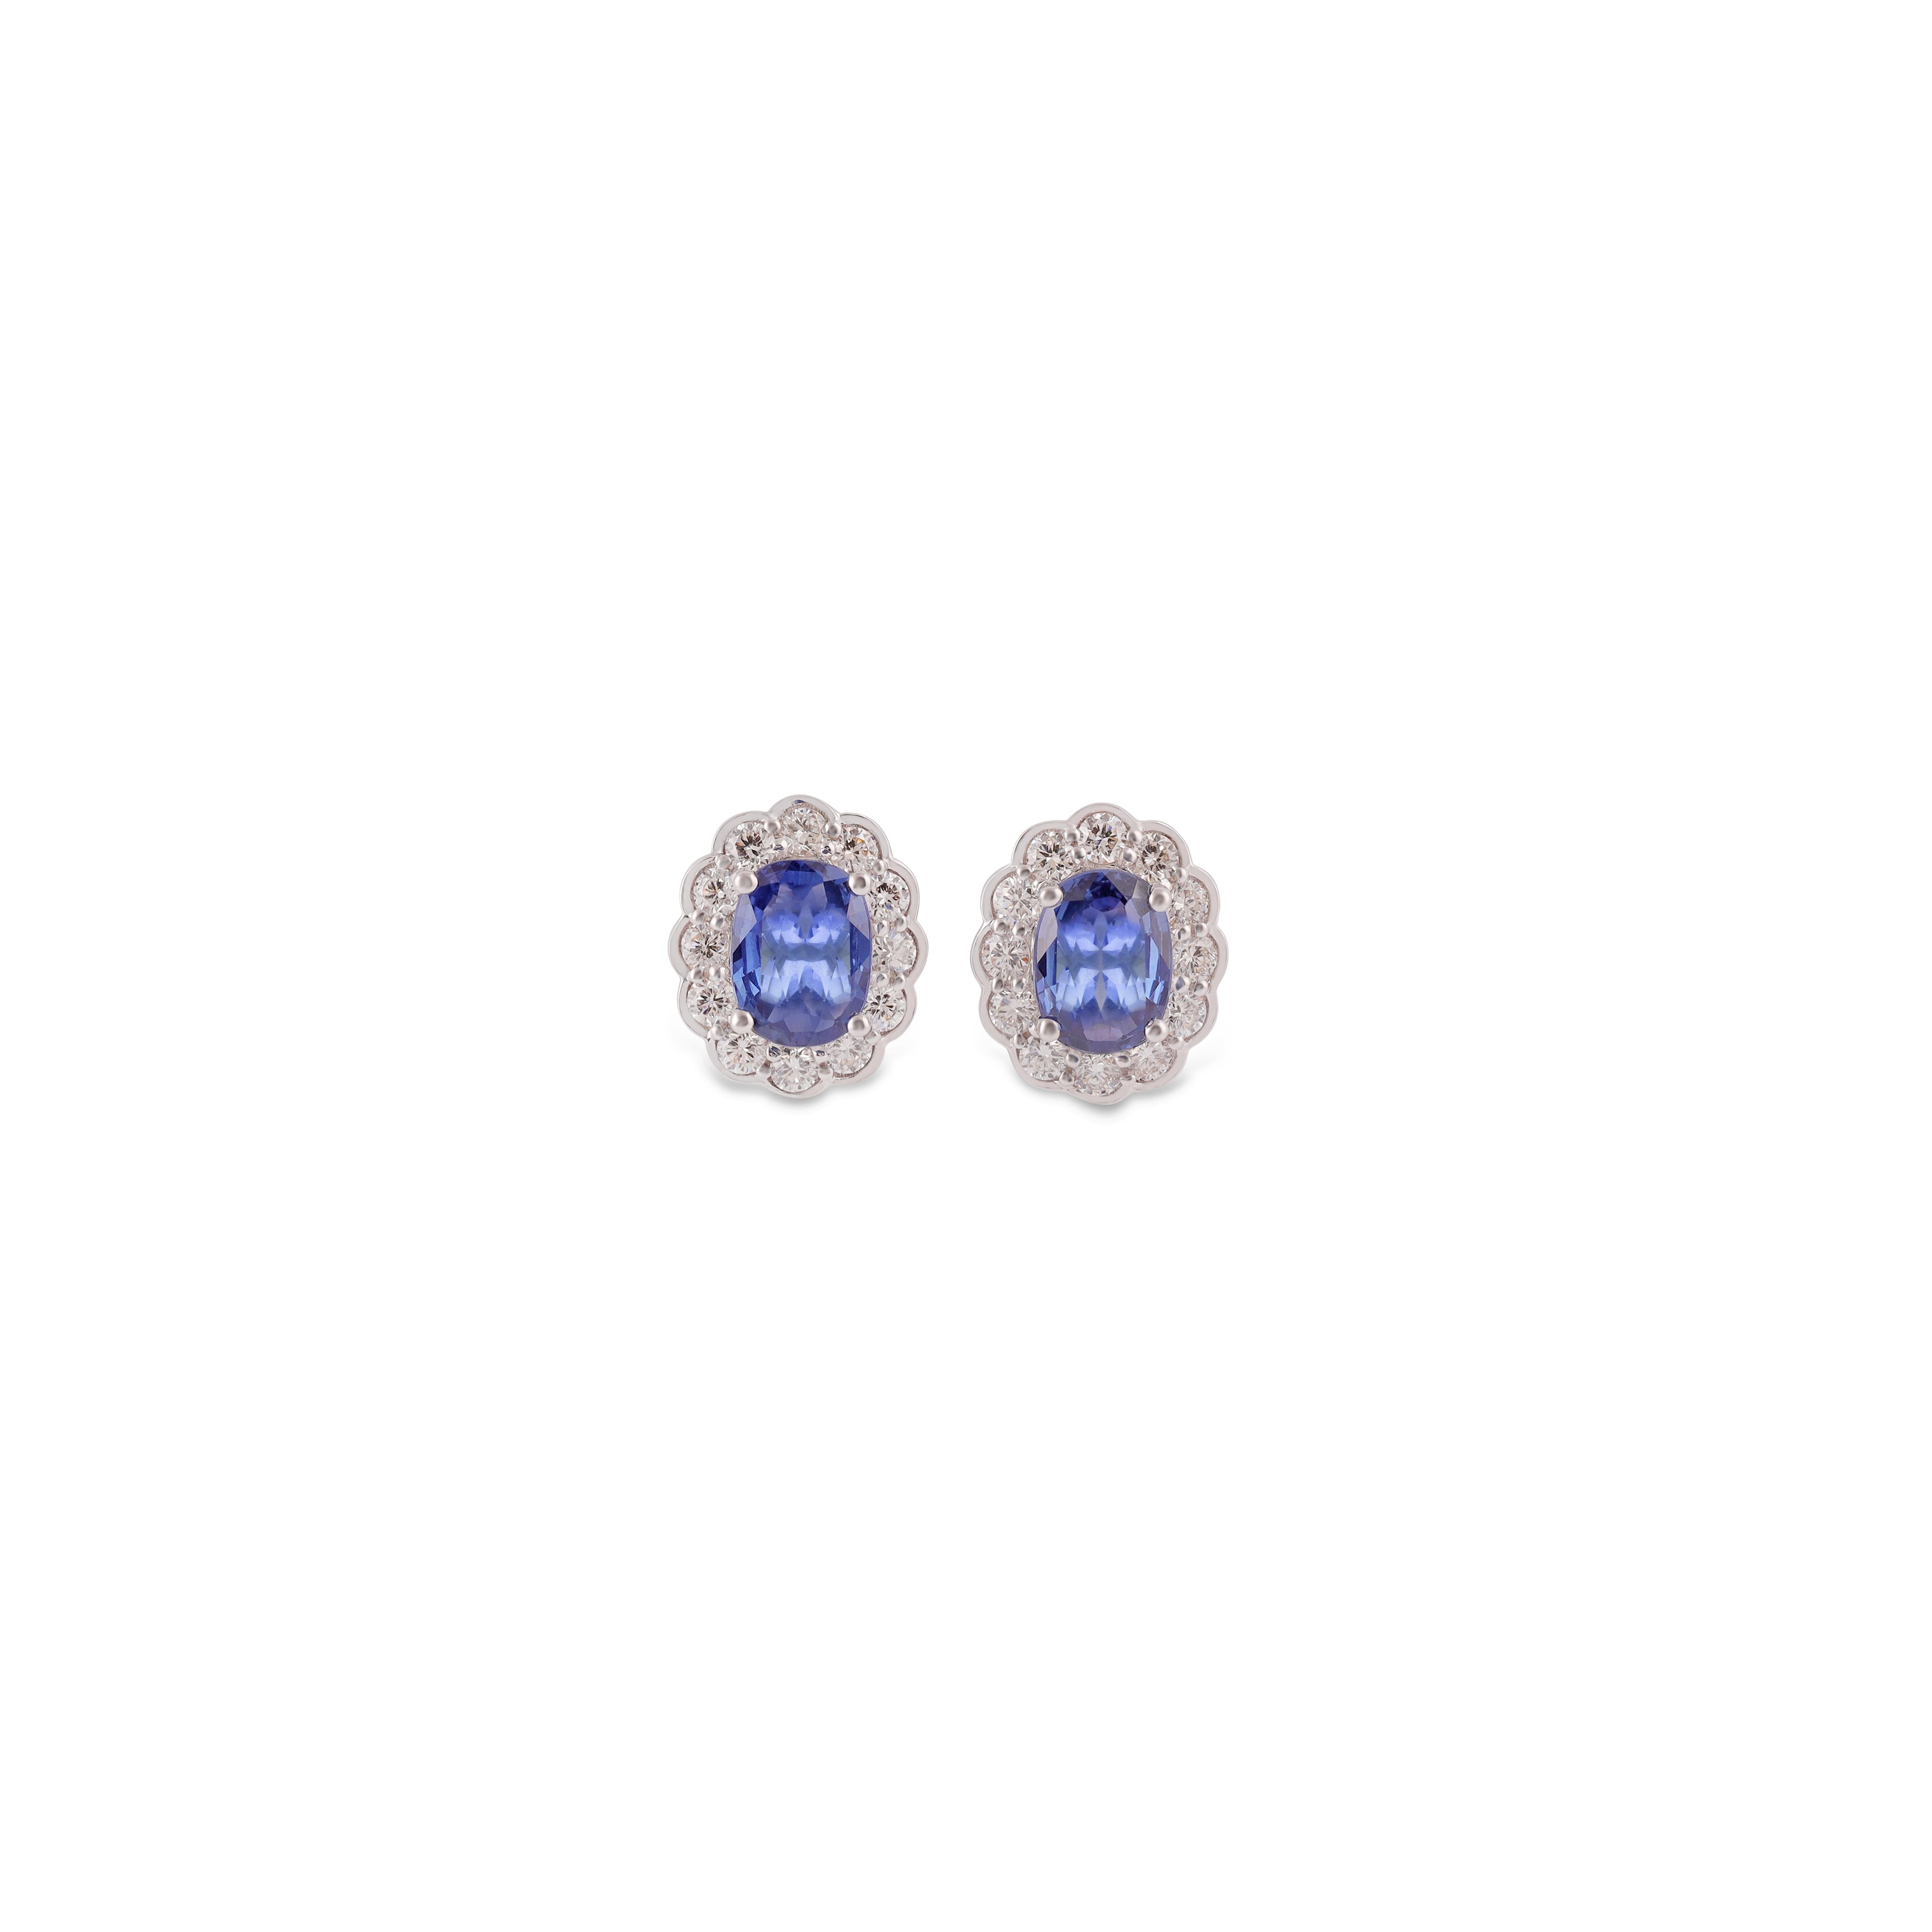 Ein atemberaubendes, feines und beeindruckendes Paar von  1,71 Karat blauer Saphir & 0,57 Karat  Diamant mit massivem 18k Weißgold. 

Ohrstecker sind von subtiler Schönheit und bringen die Farben der natürlichen Edelsteine und leuchtenden Diamanten